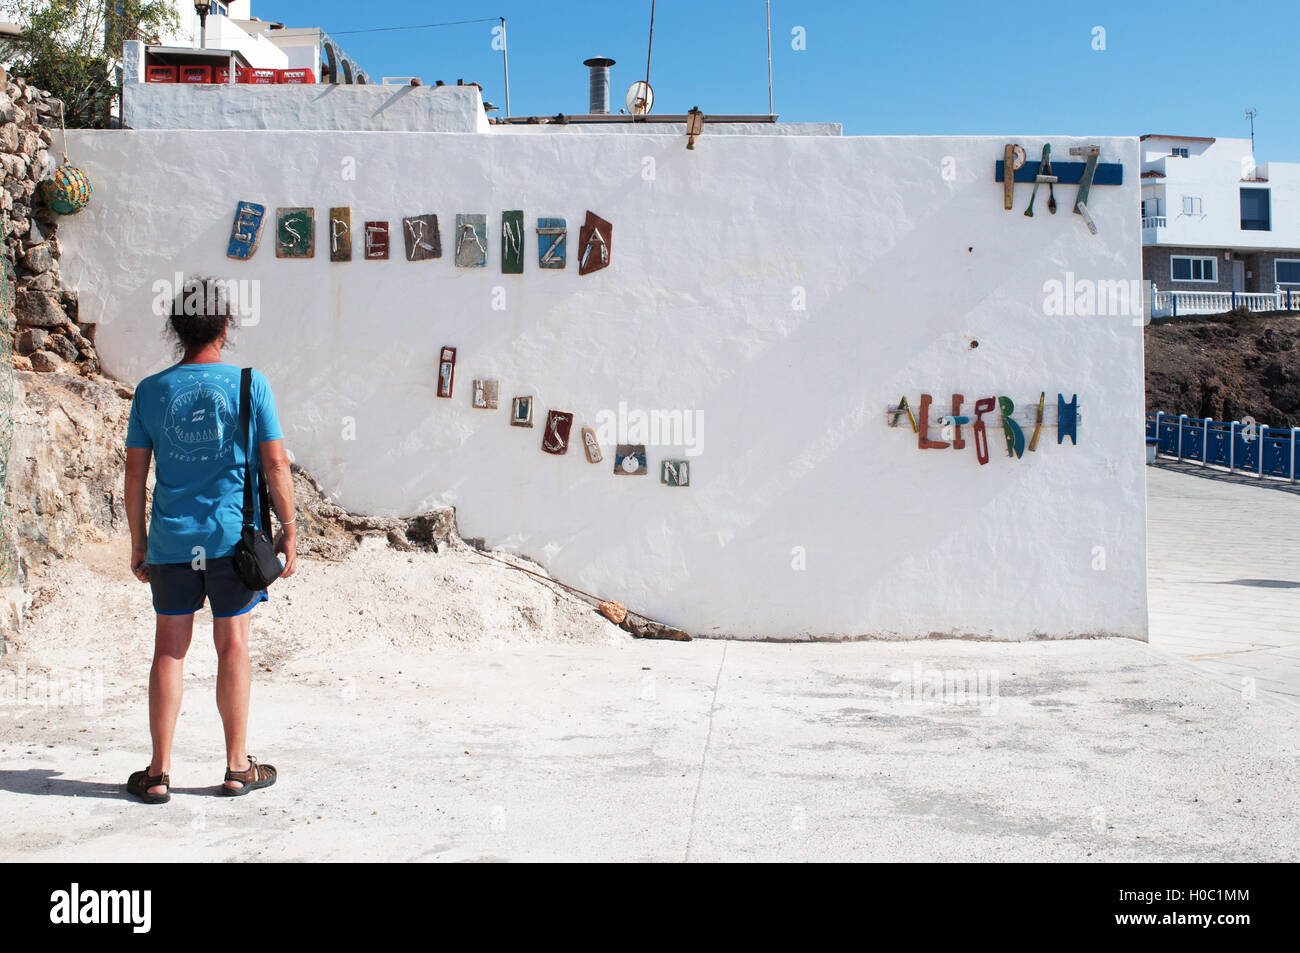 Fuerteventura: der Mensch mit Blick auf die Worte der Hoffnung, Illusion, den Frieden und die Heiterkeit in Spanisch, bestehend aus Stücken von alten Booten auf einer Wand in El Cotillo Stockfoto